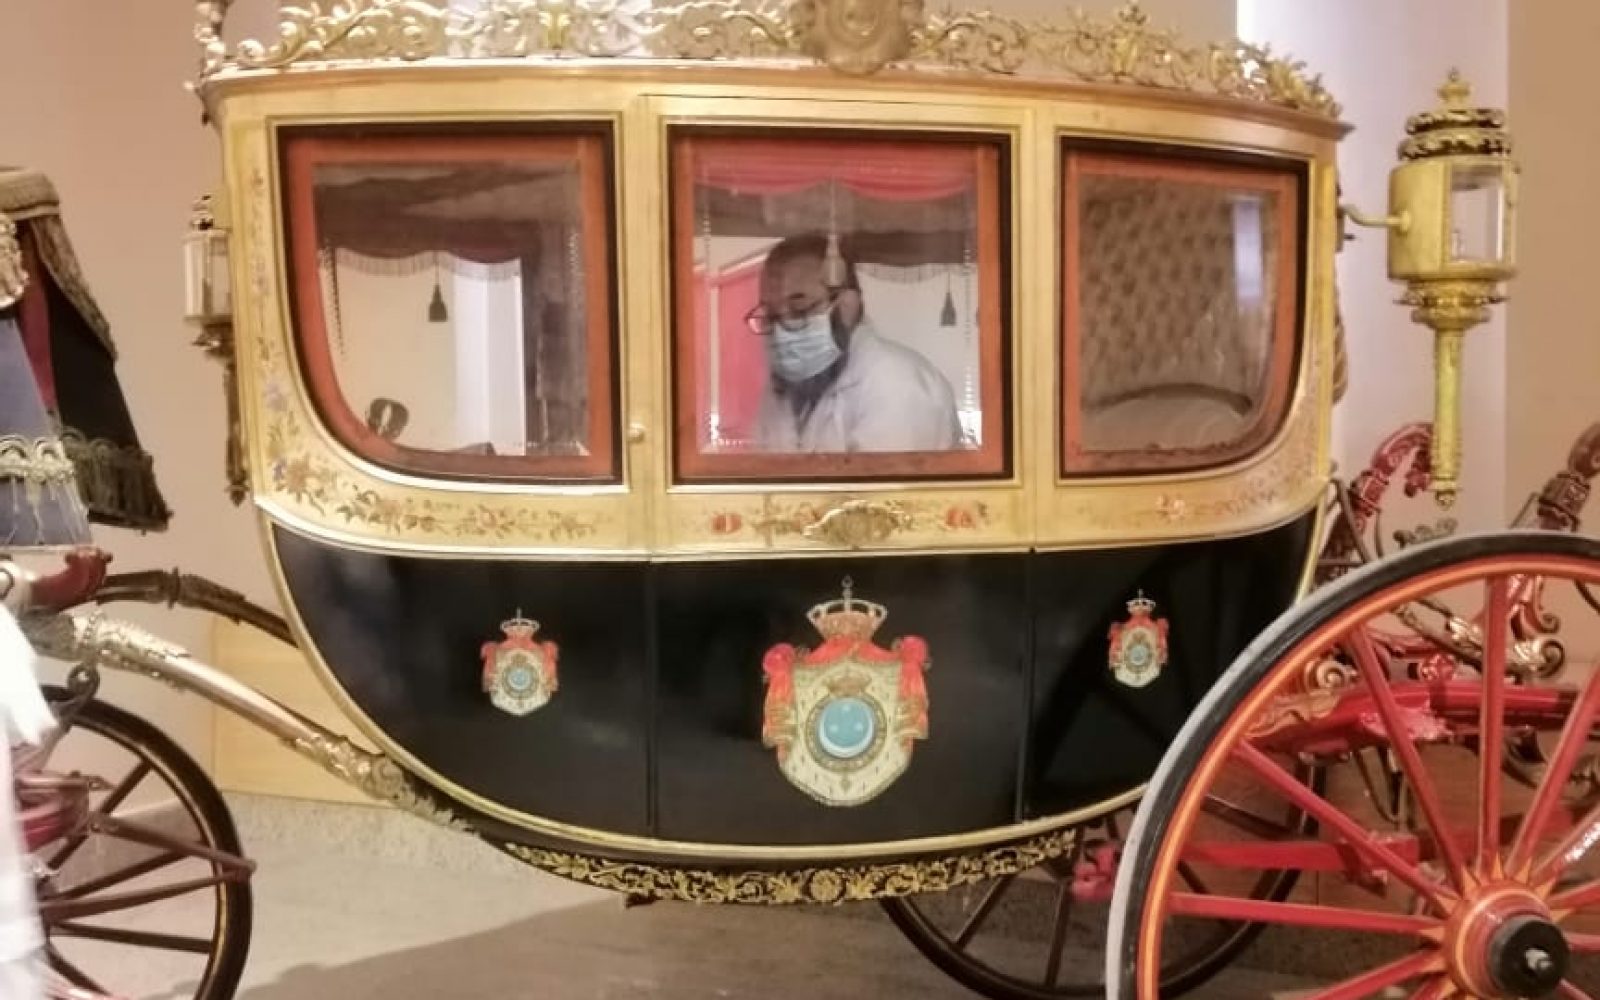 وزيري : 63 مليون جنيه تكلفة ترميم متحف المركبات الملكية - جريدة المال